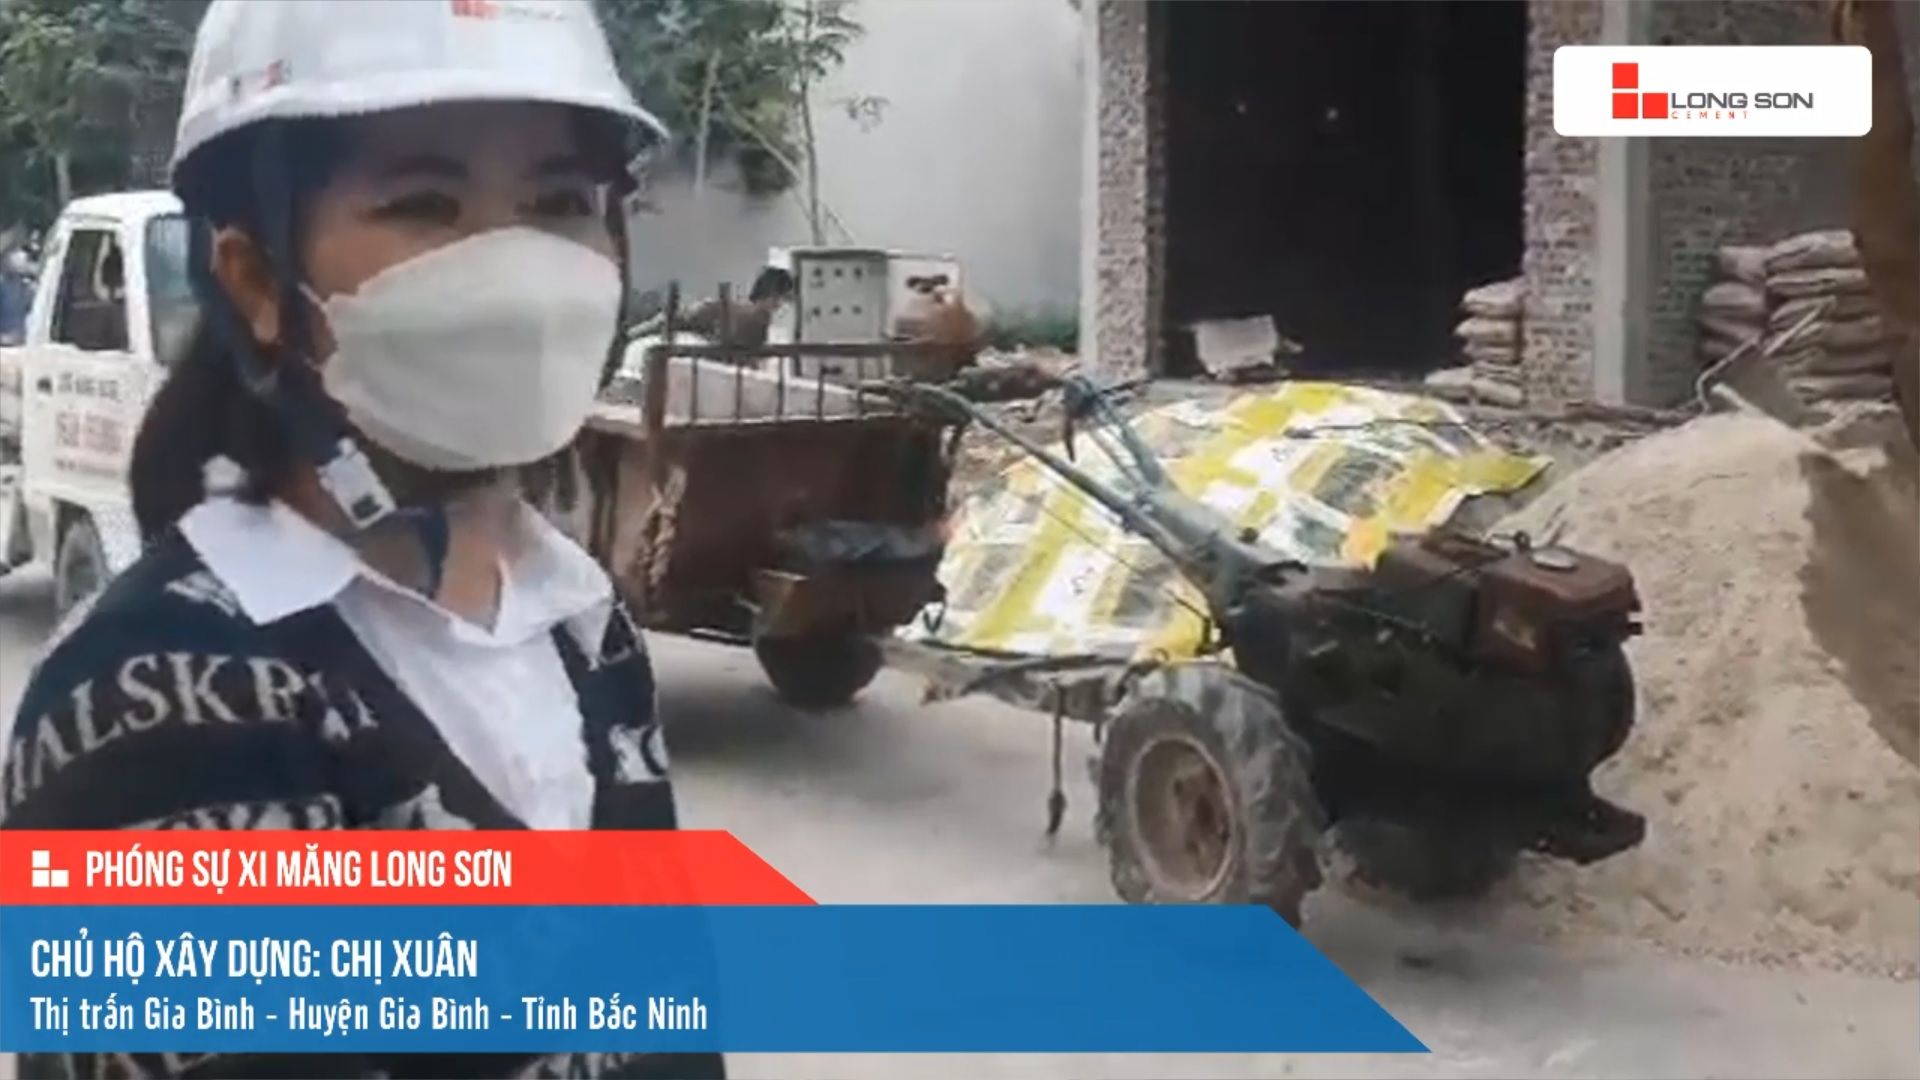 Phóng sự công trình sử dụng Xi măng Long Sơn tại Bắc Ninh ngày 15/11/2021